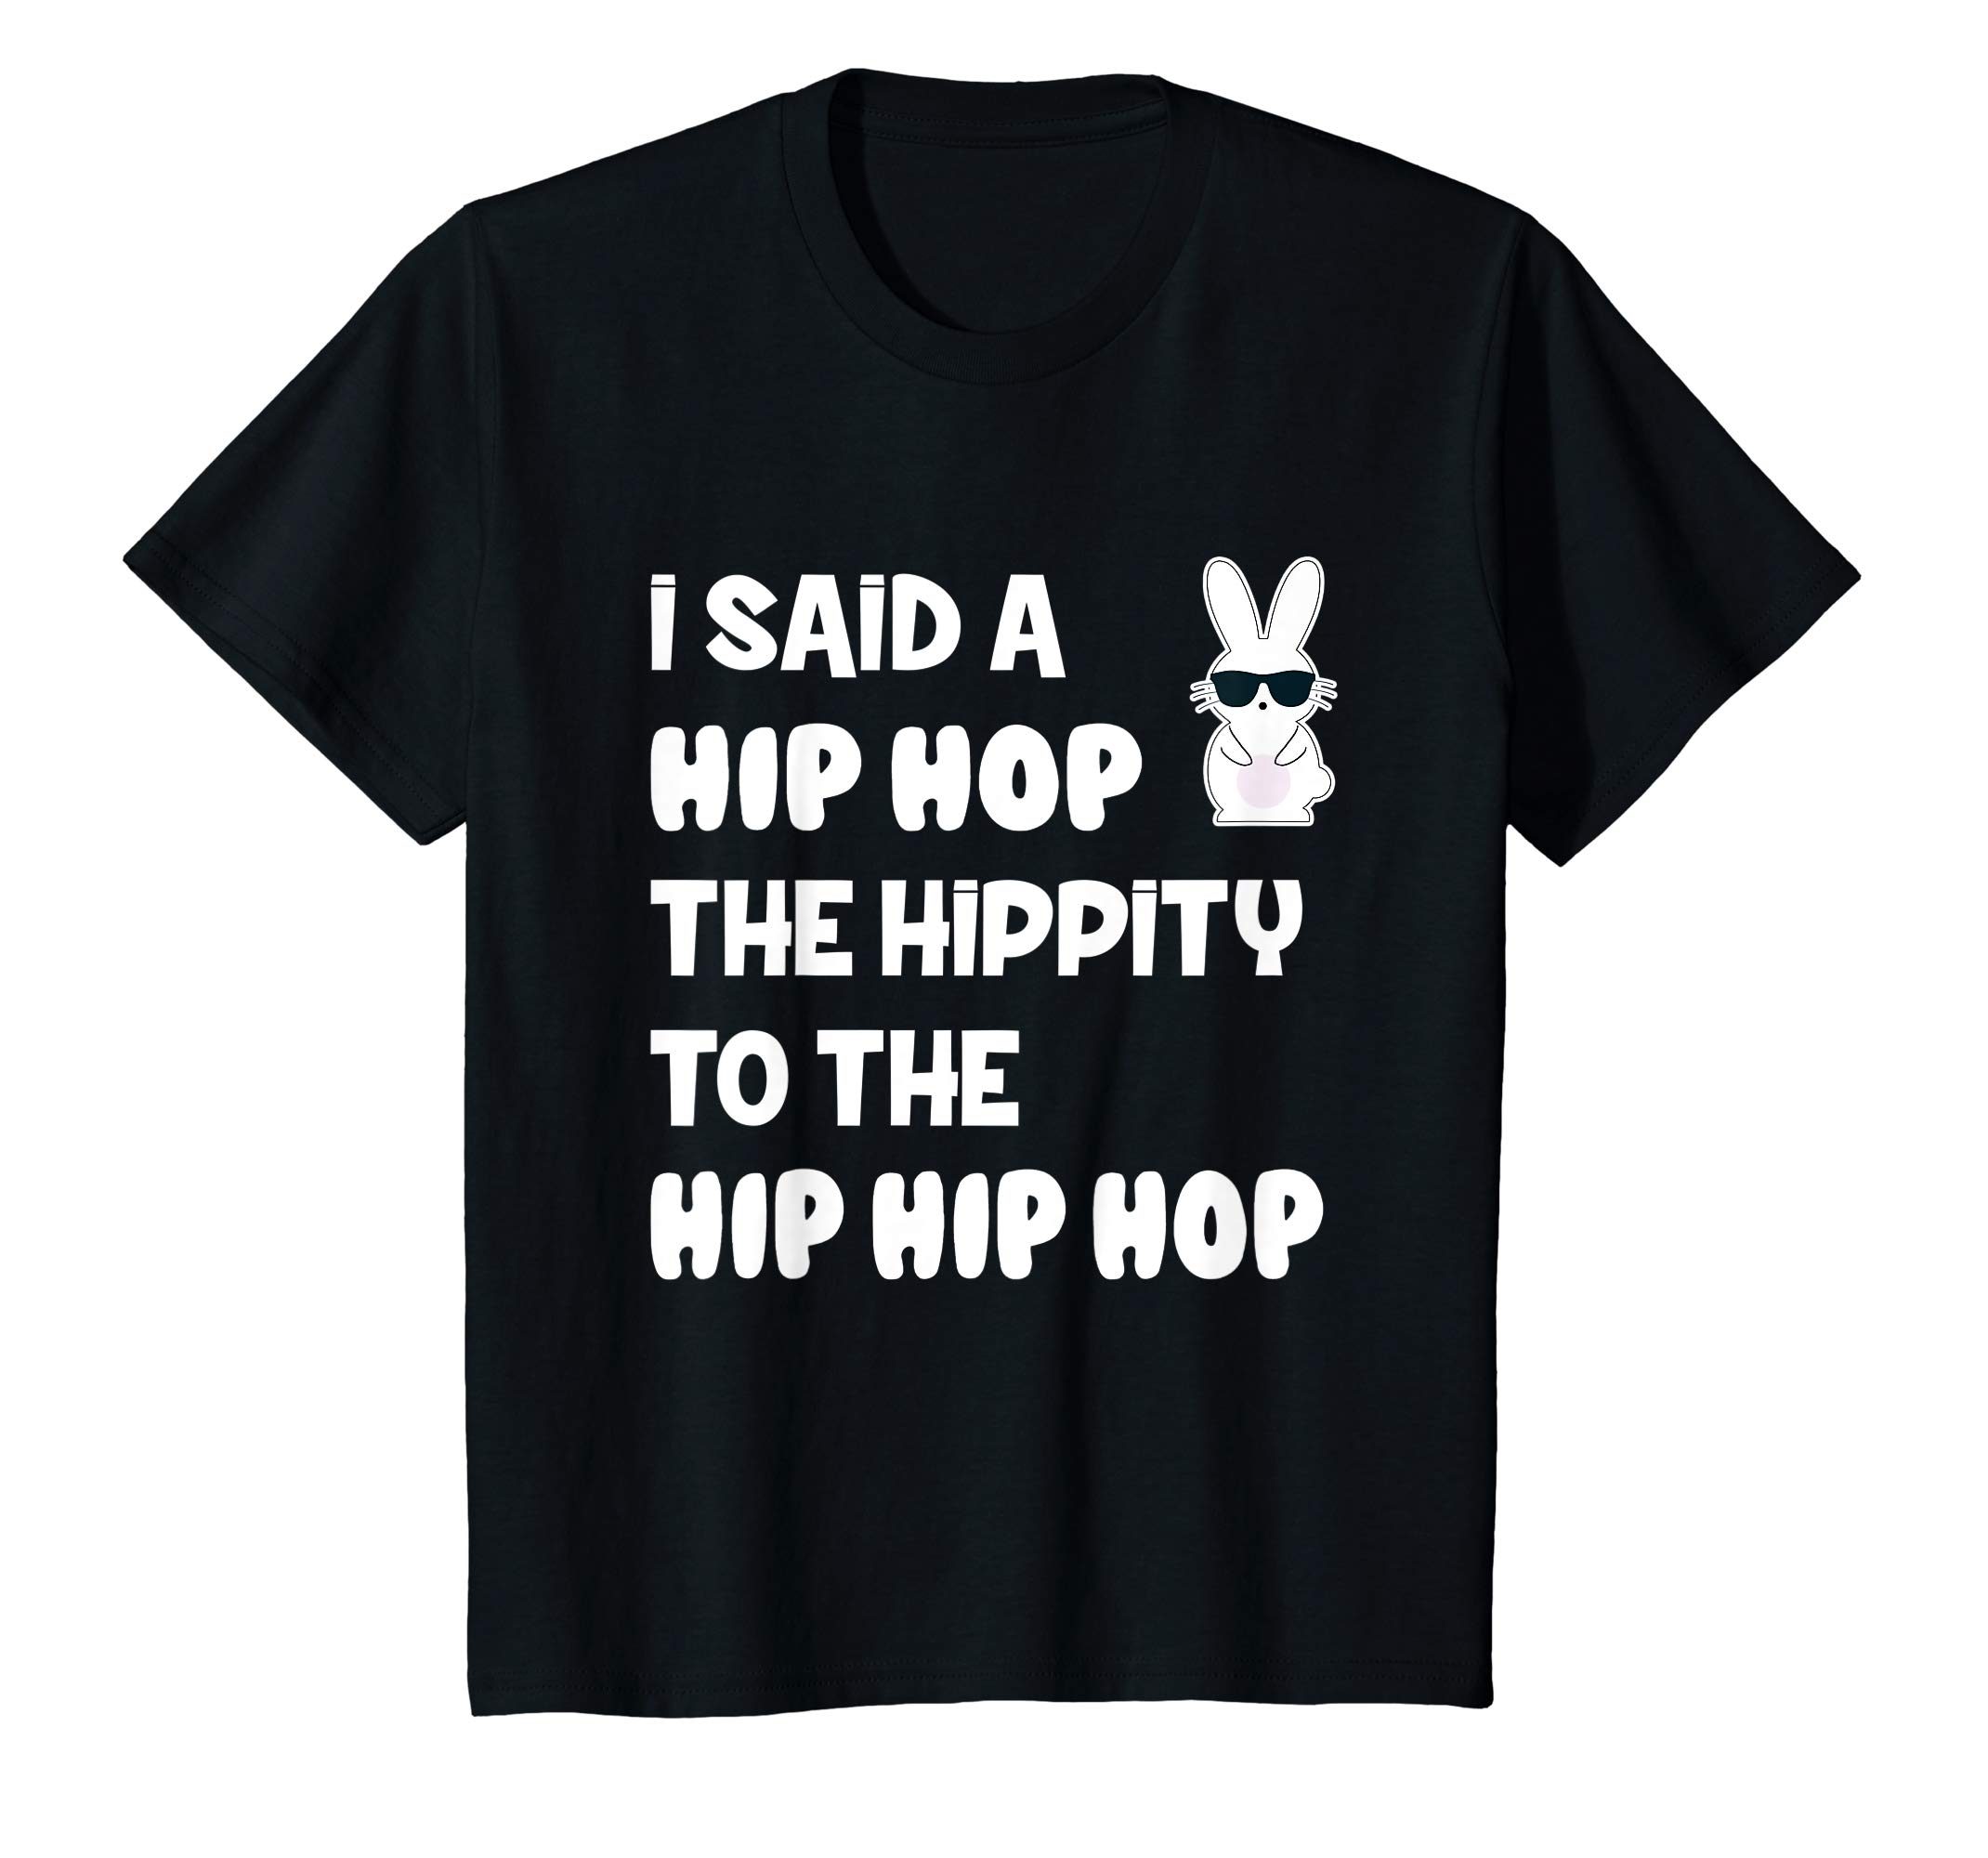 I Said A Hip Hop The Hippity To The Hip Hip Hop T-shirt - OrderQuilt.com